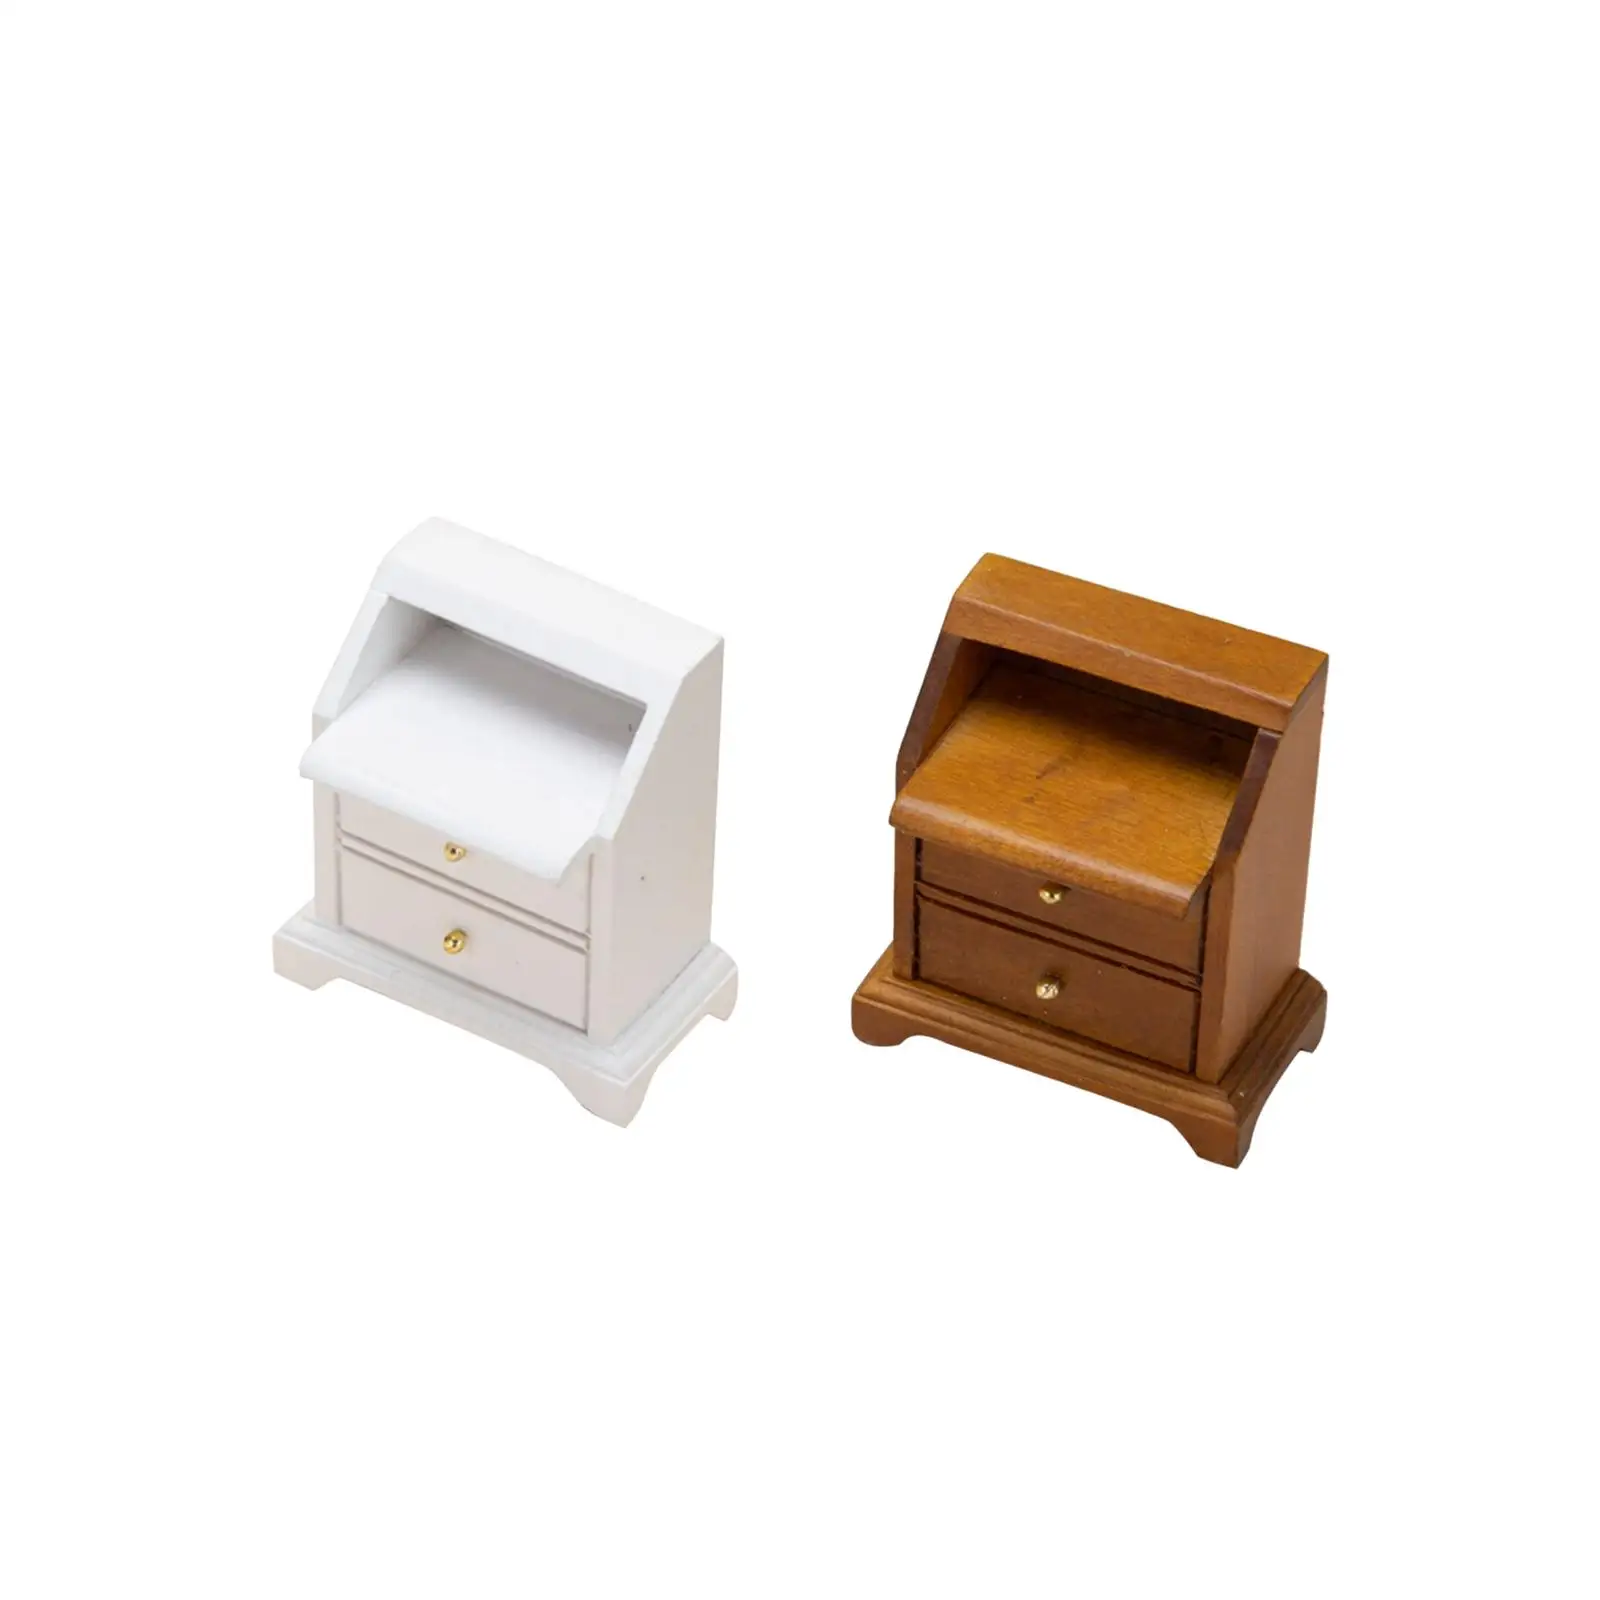 

Масштаб 1:12, кукольный домик, тумбочки, прикроватный столик, миниатюрная деревянная мебель